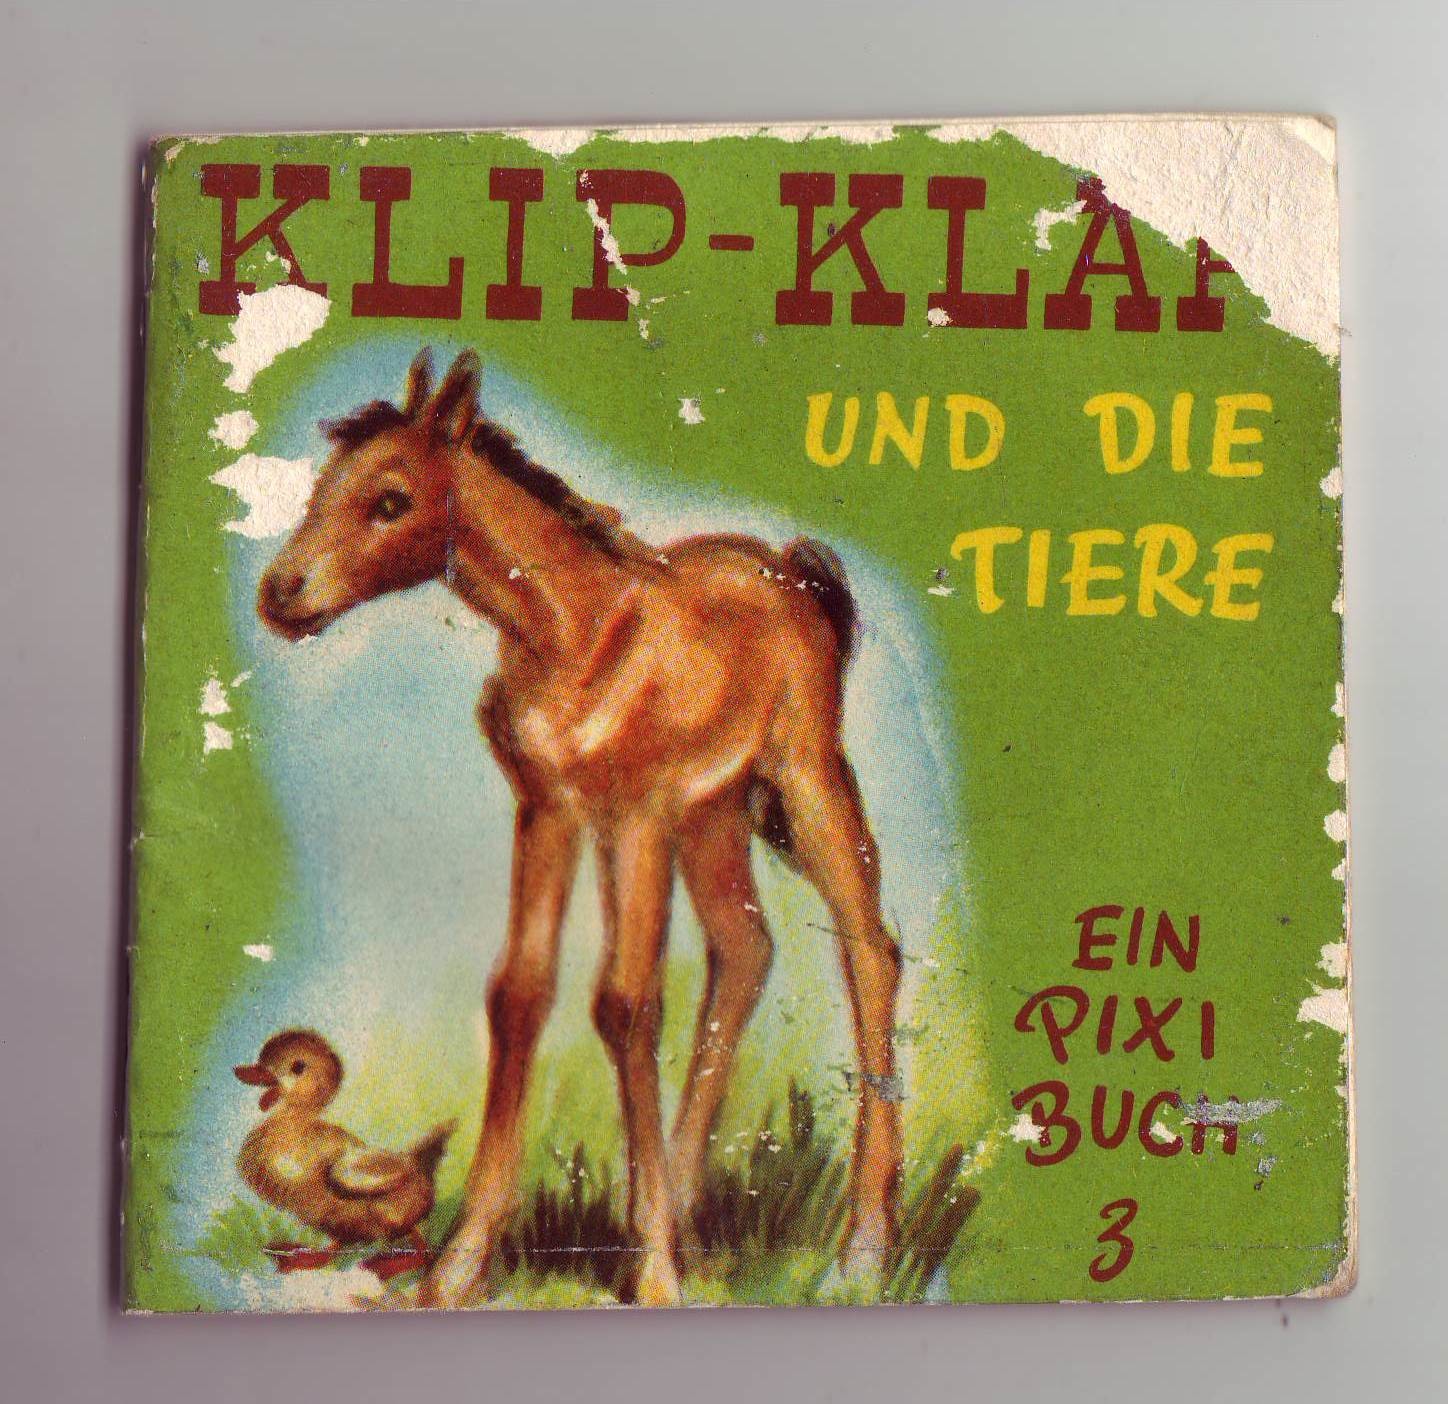 Pixi-Buch "Klip-Klap und die Tiere" (Stadtmuseum Lippstadt CC BY-NC-SA)